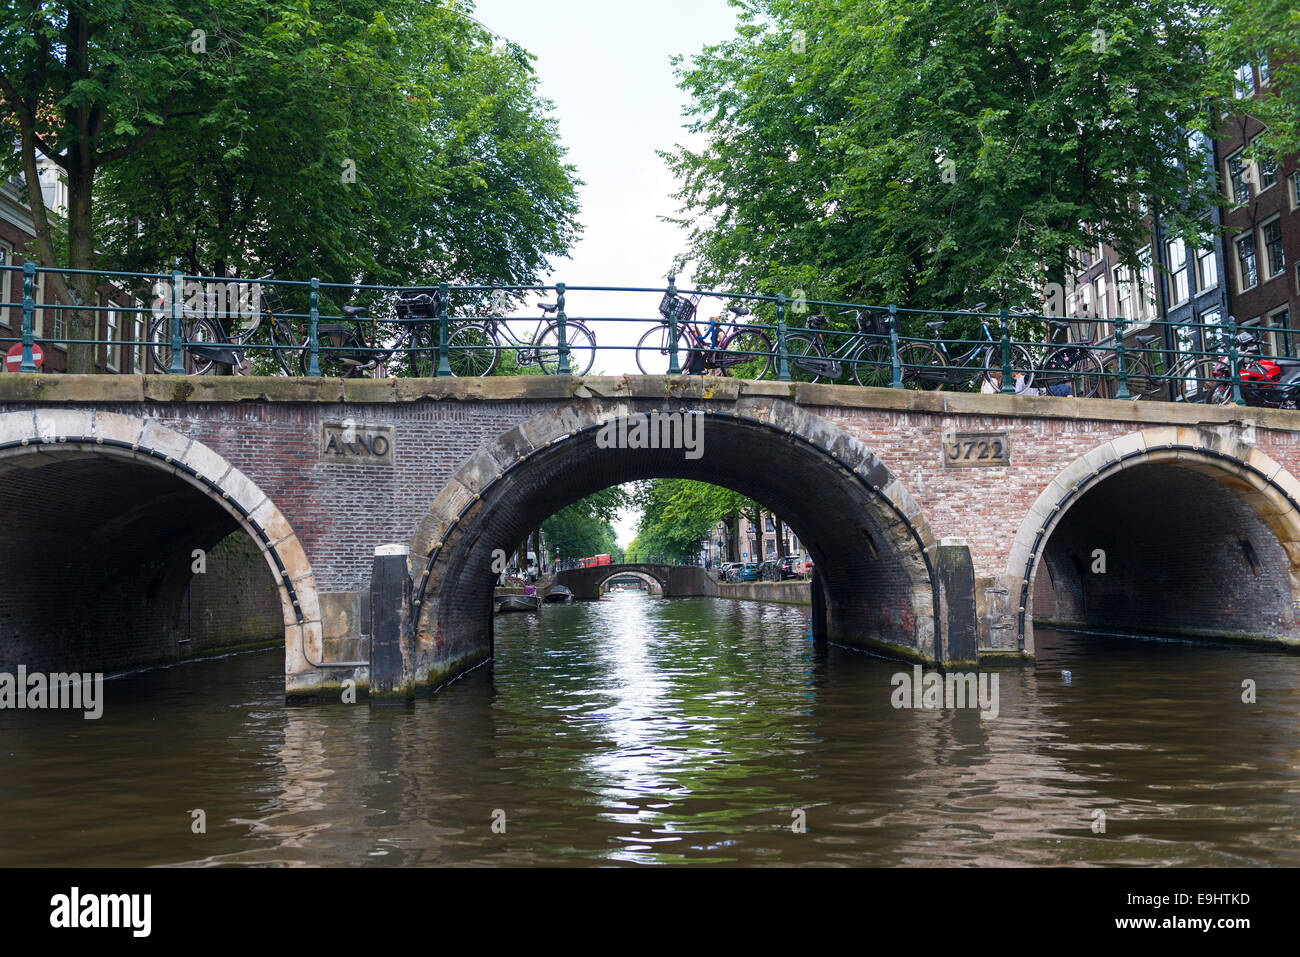 Los cinco puentes sobre el canal Reguliersgracht en Ámsterdam, Holanda Foto de stock